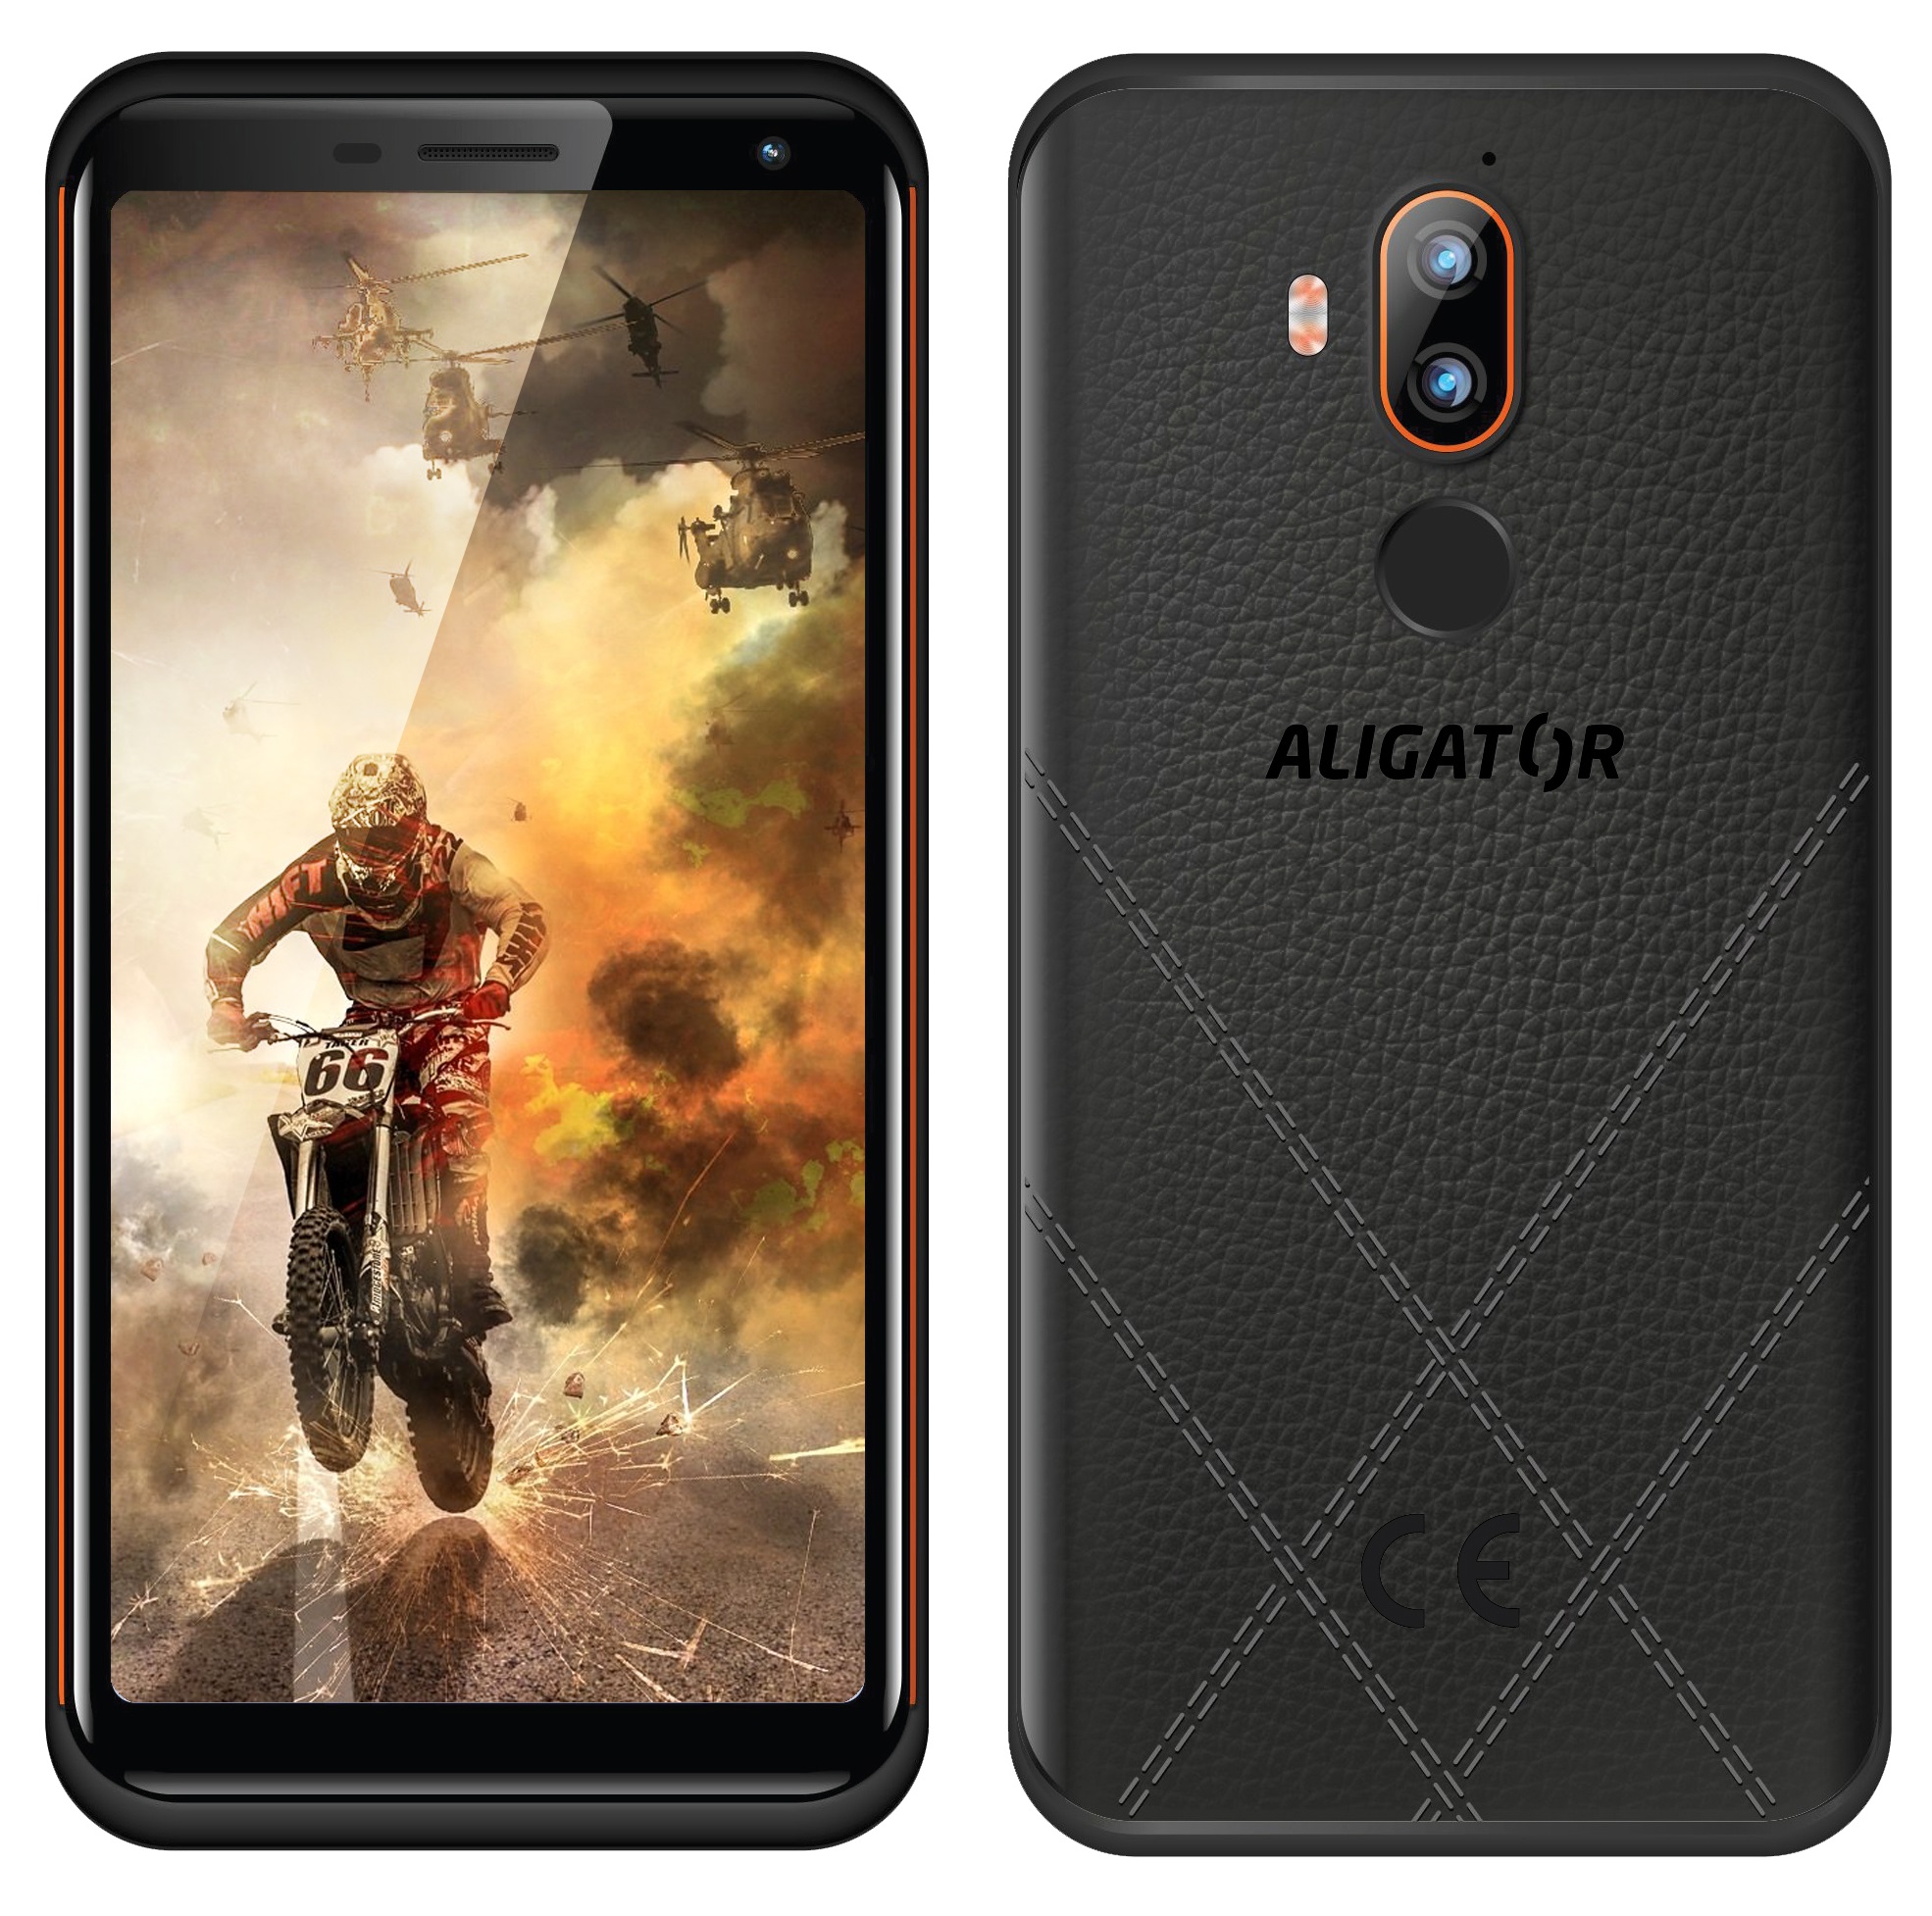 ALIGATOR RX800 eXtremo 64GB černo-oranžový